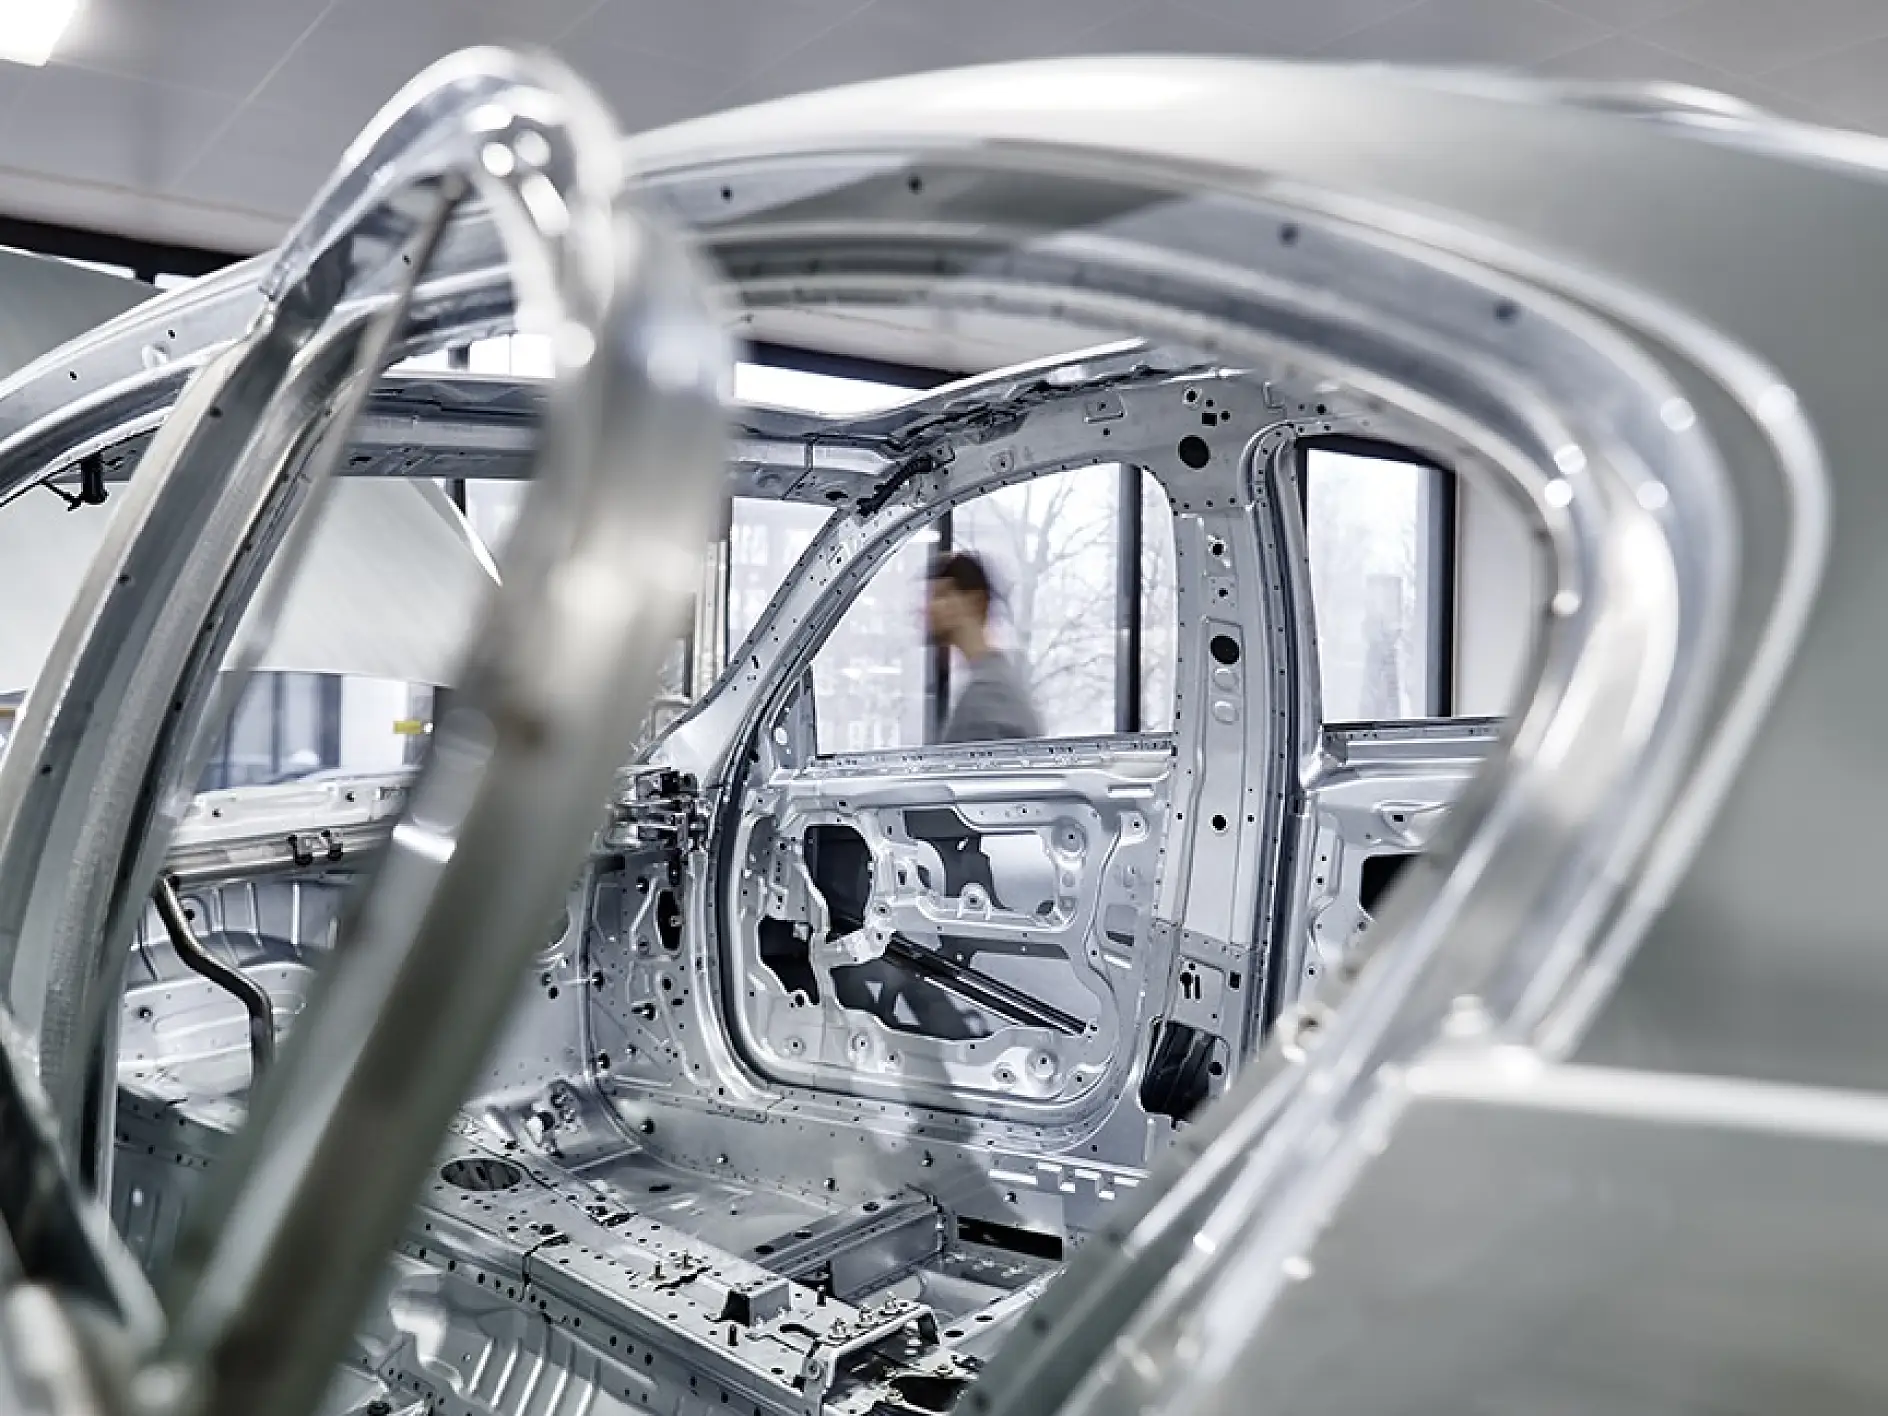 Offerta di soluzioni adesive per coprire i fori delle carrozzerie durante il processo produttivo delle automobili